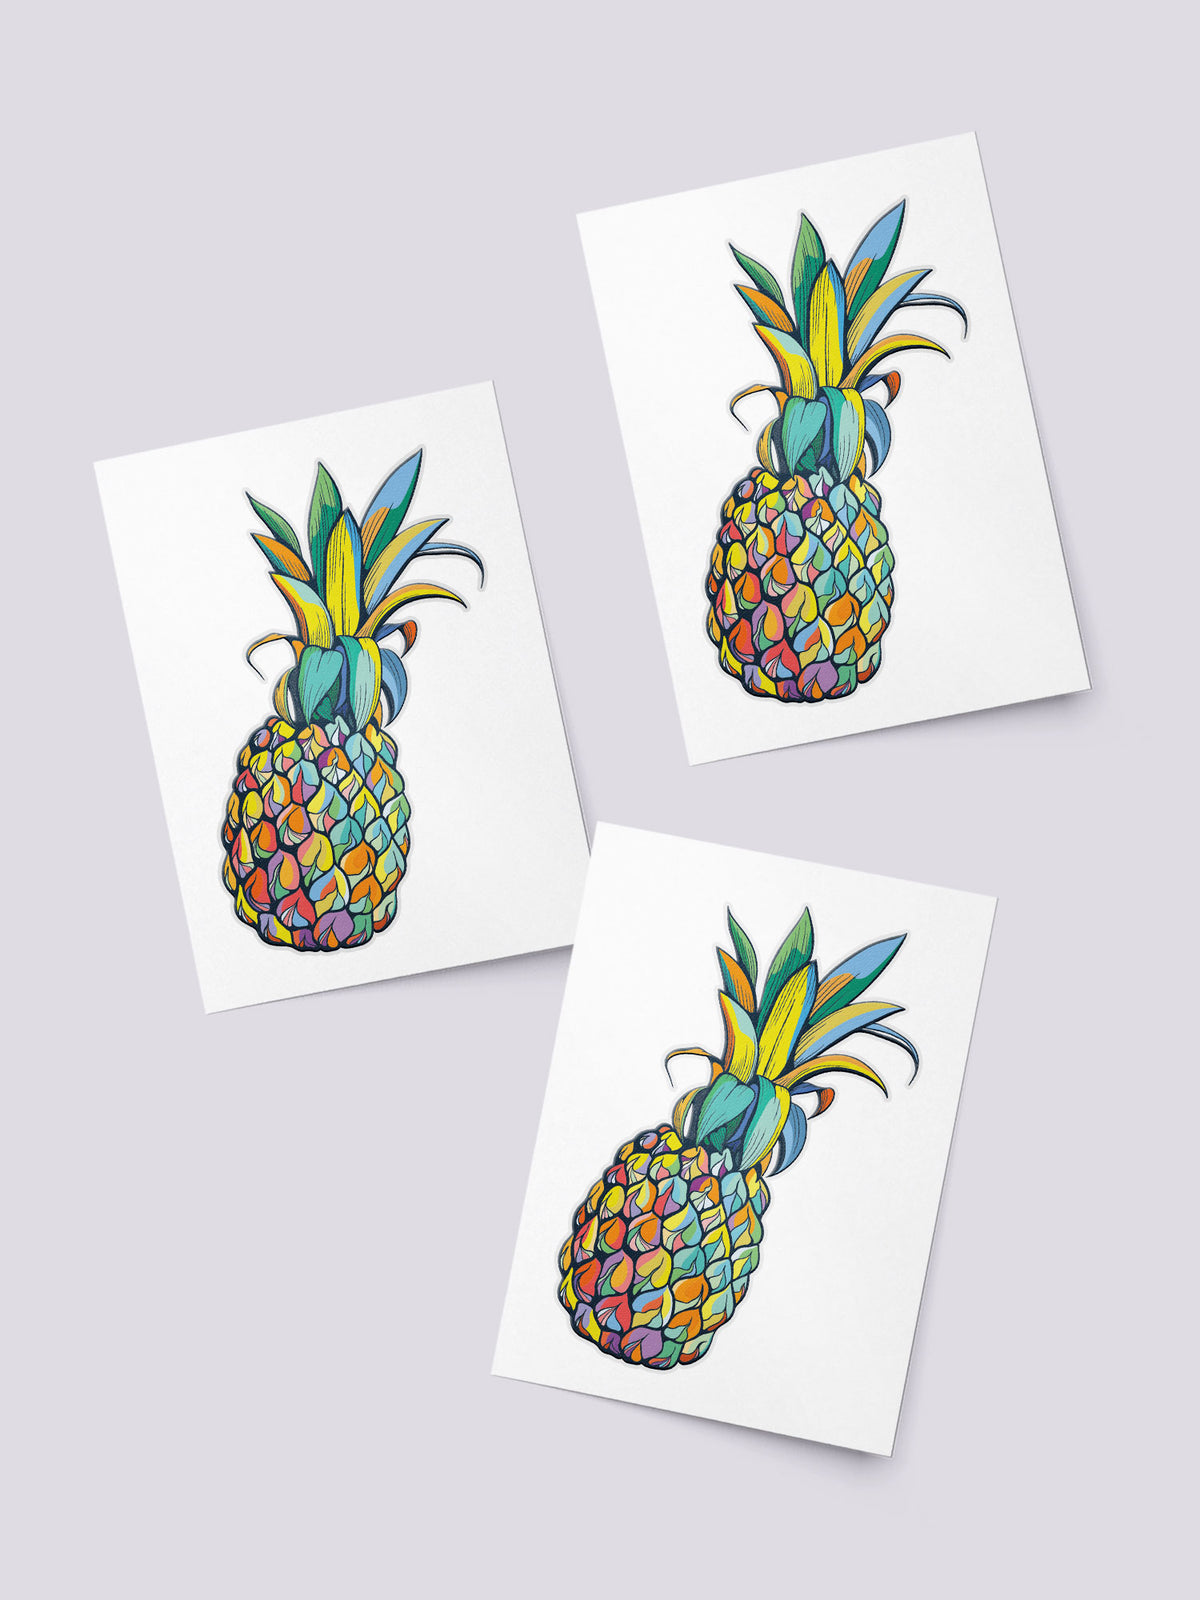 Juicy pineapple